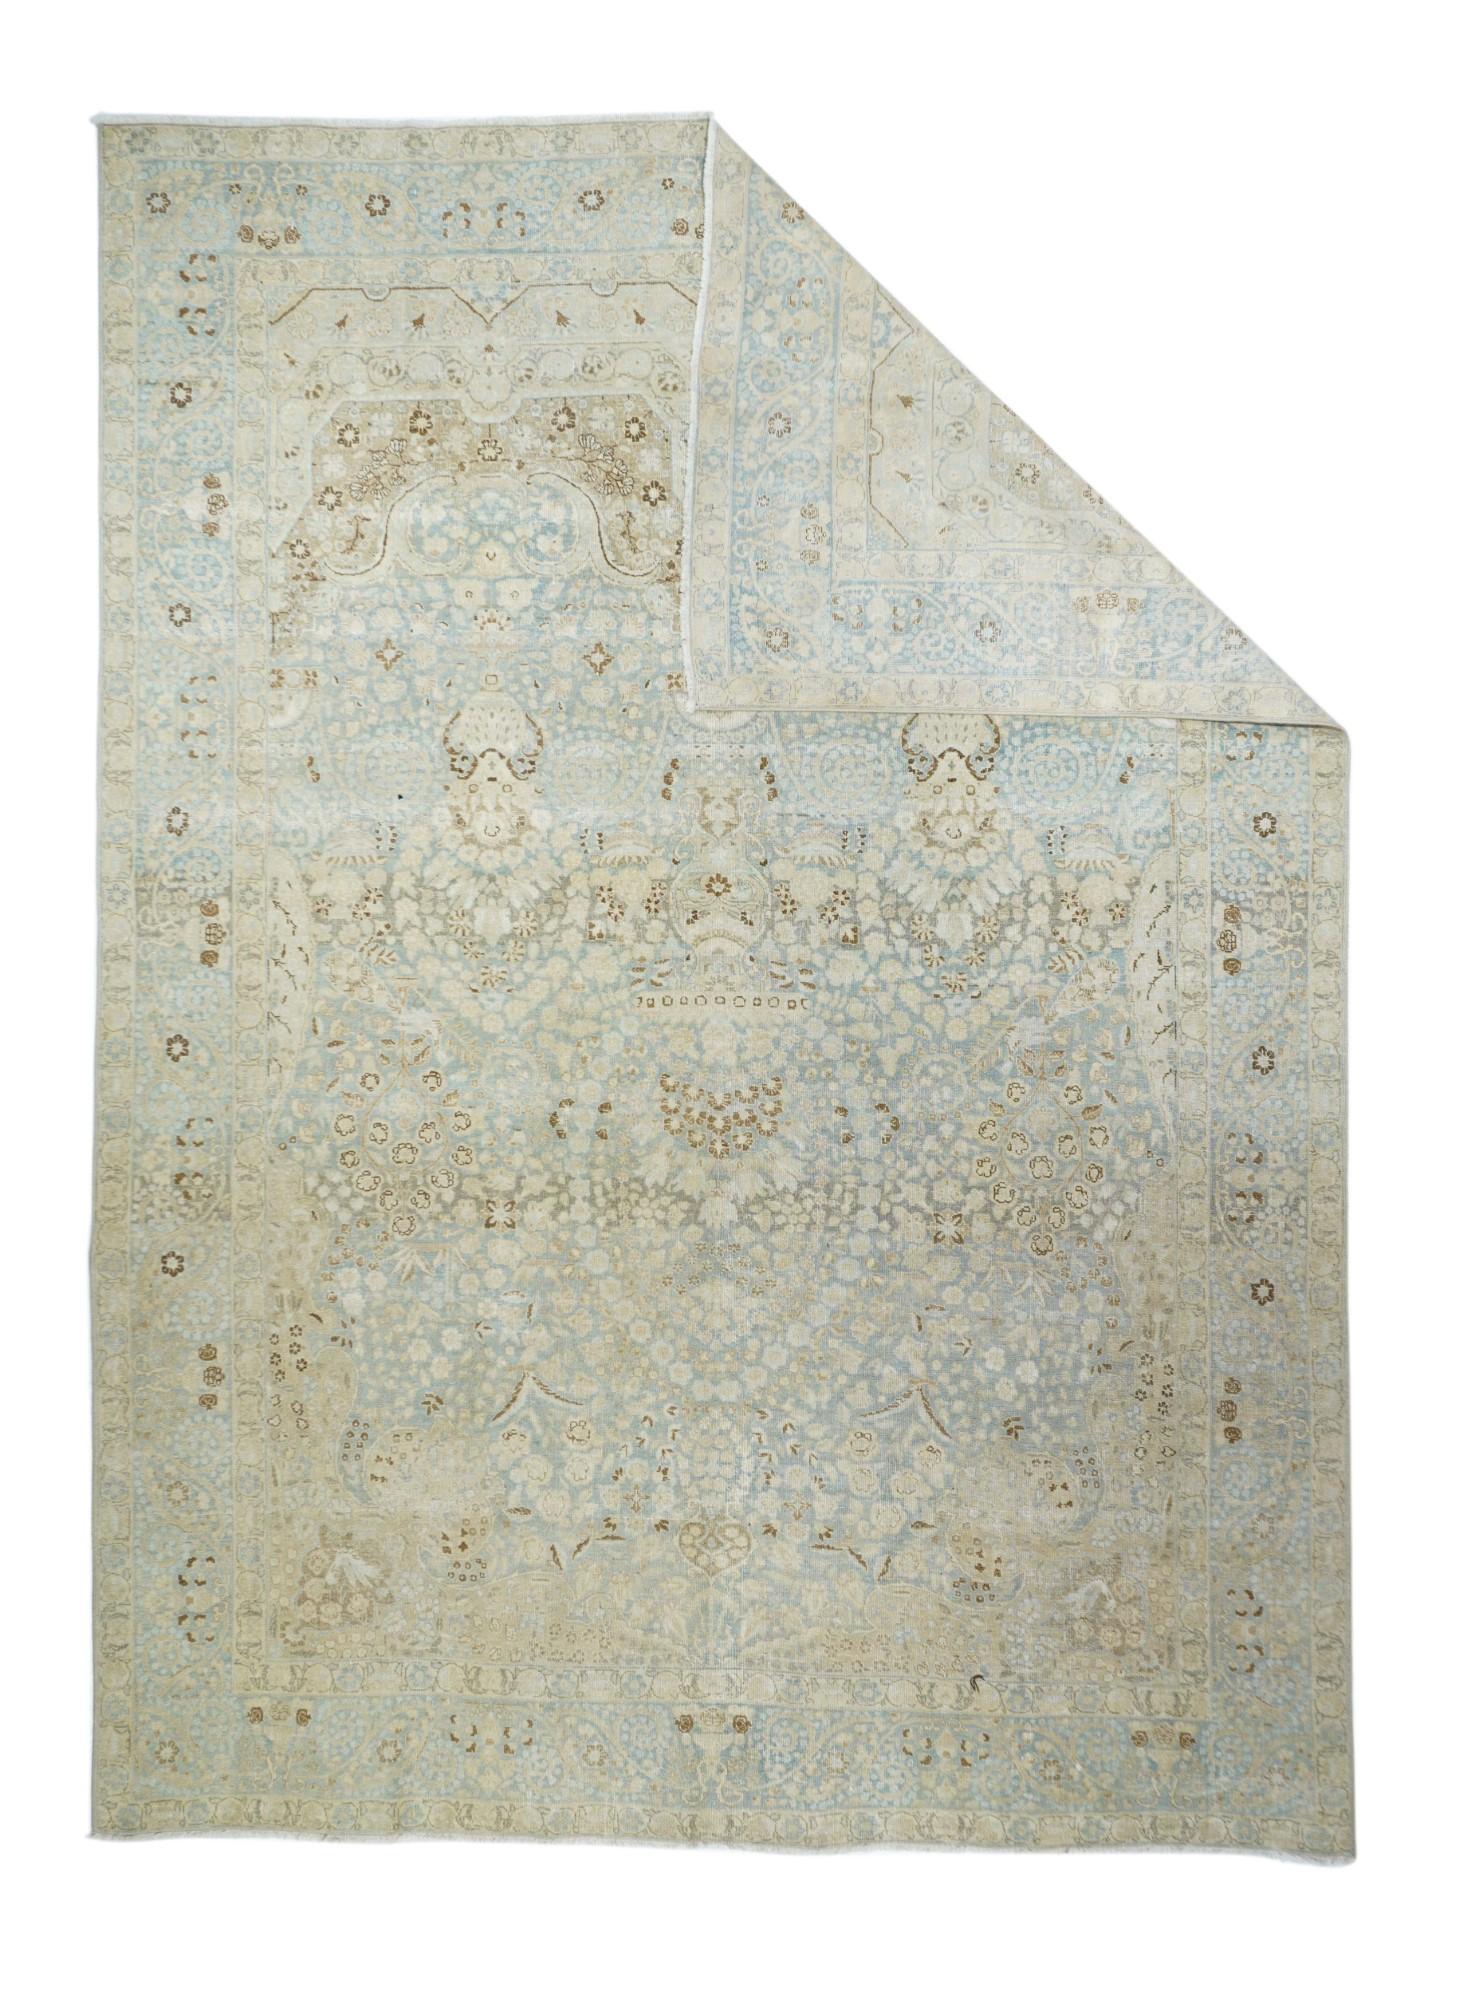 Vintage Tabriz rug 7'8'' x 10'10''.